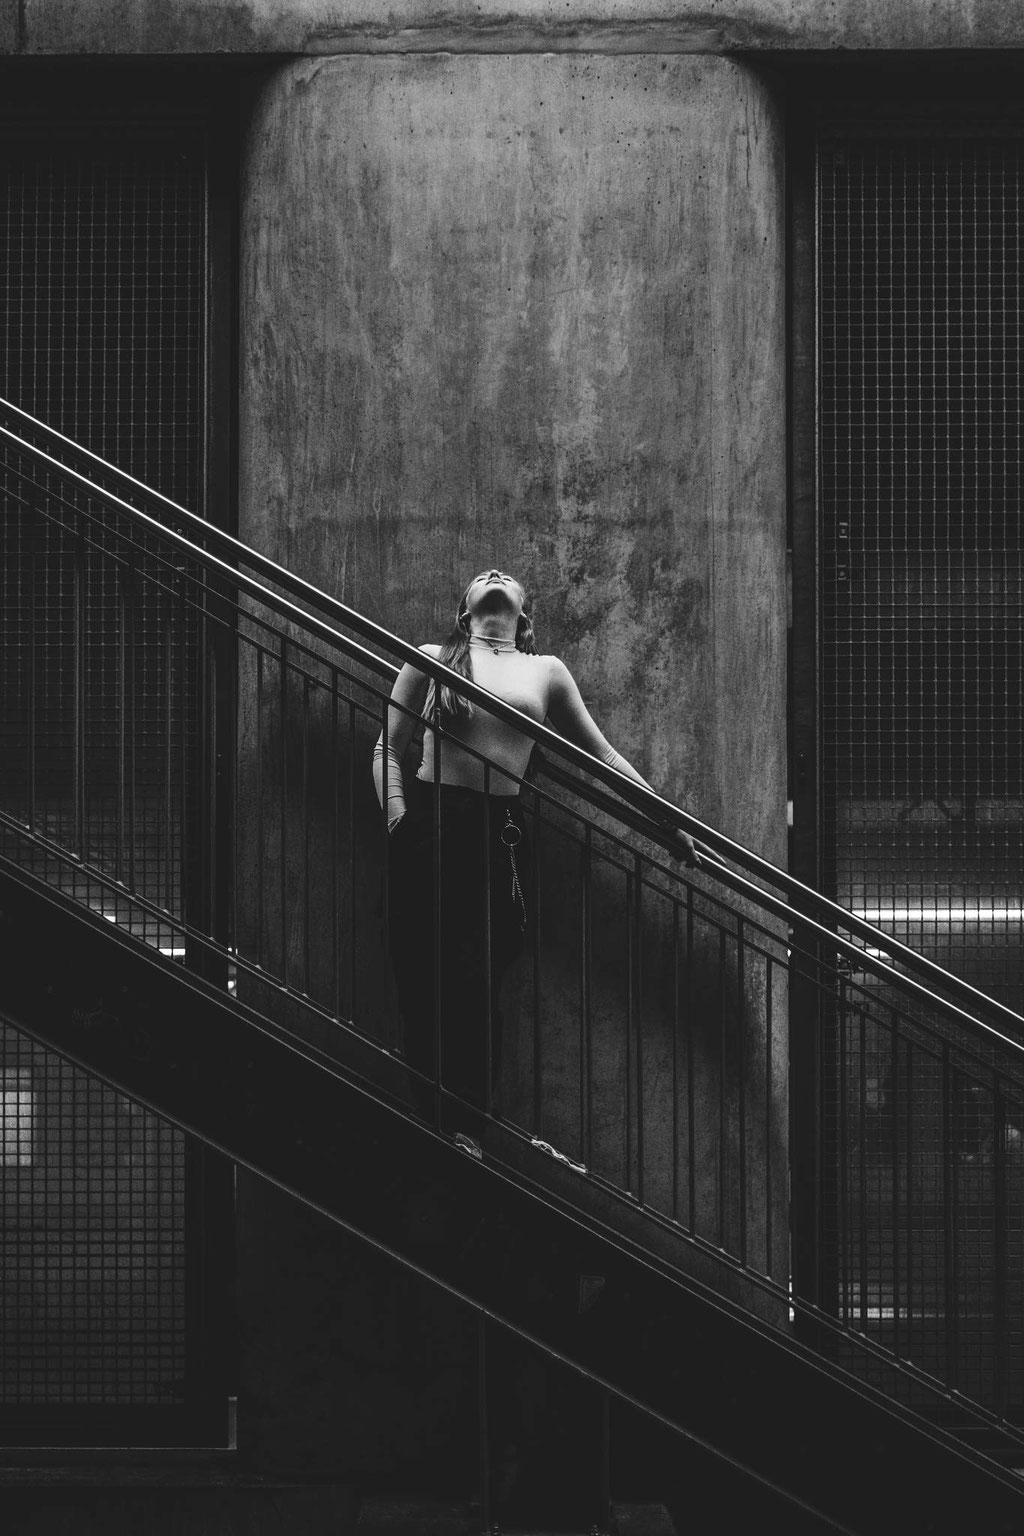 Portrait mit stehendem Model auf Treppe in urbanen Setting in schwarz weiß.